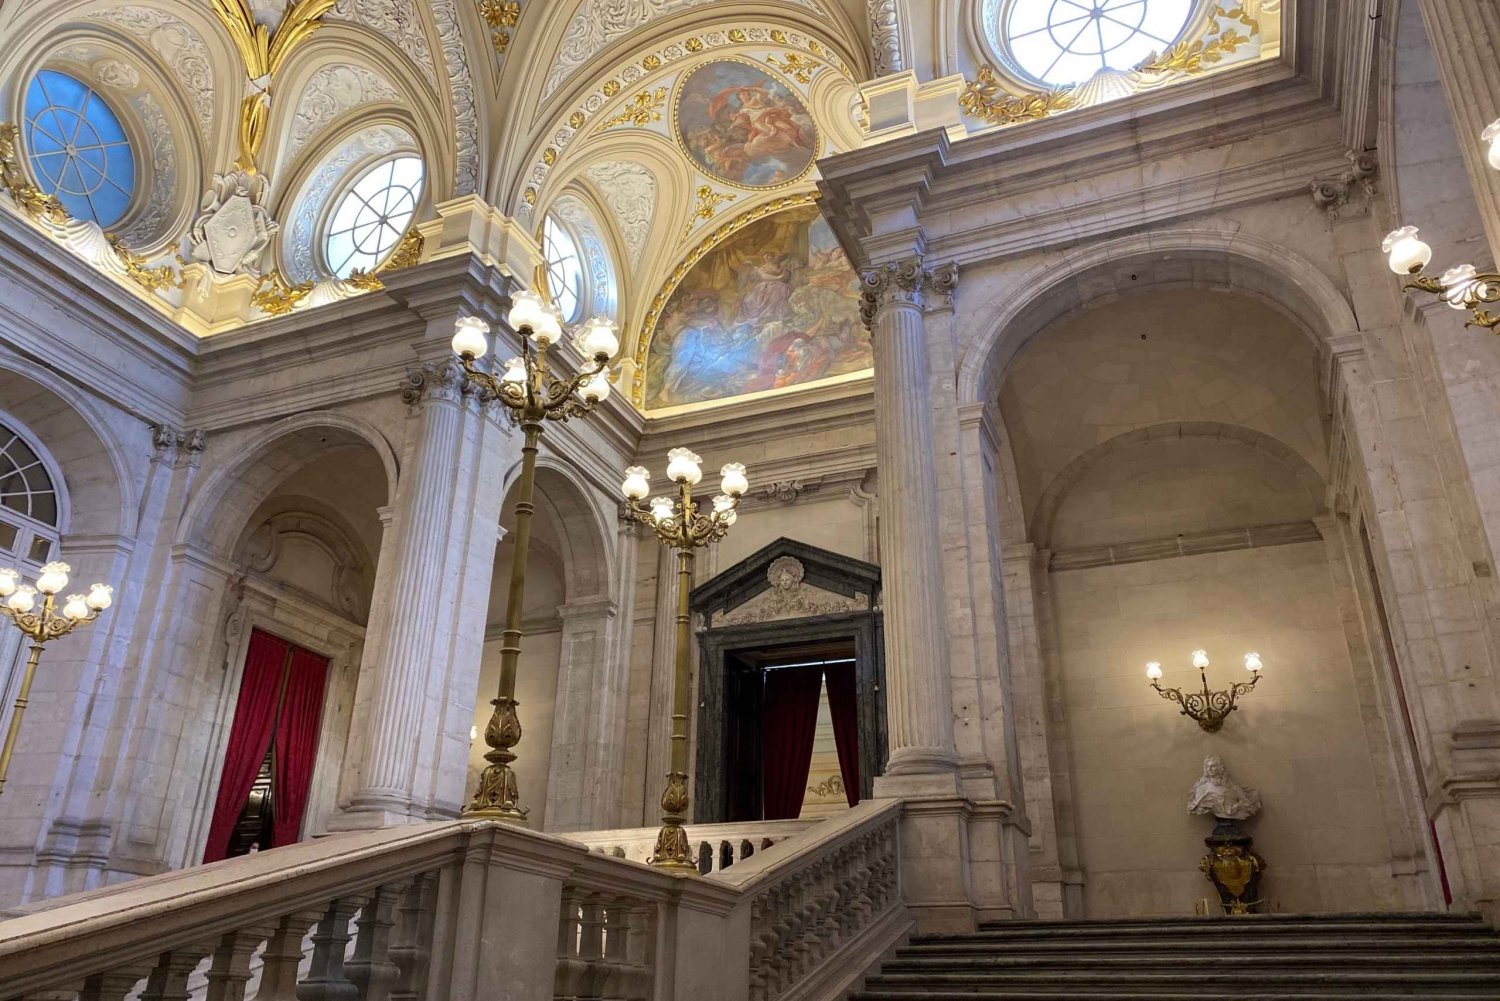 MADRYT: Zwiedzanie Pałacu i Muzeum Prado prywatnym pojazdem